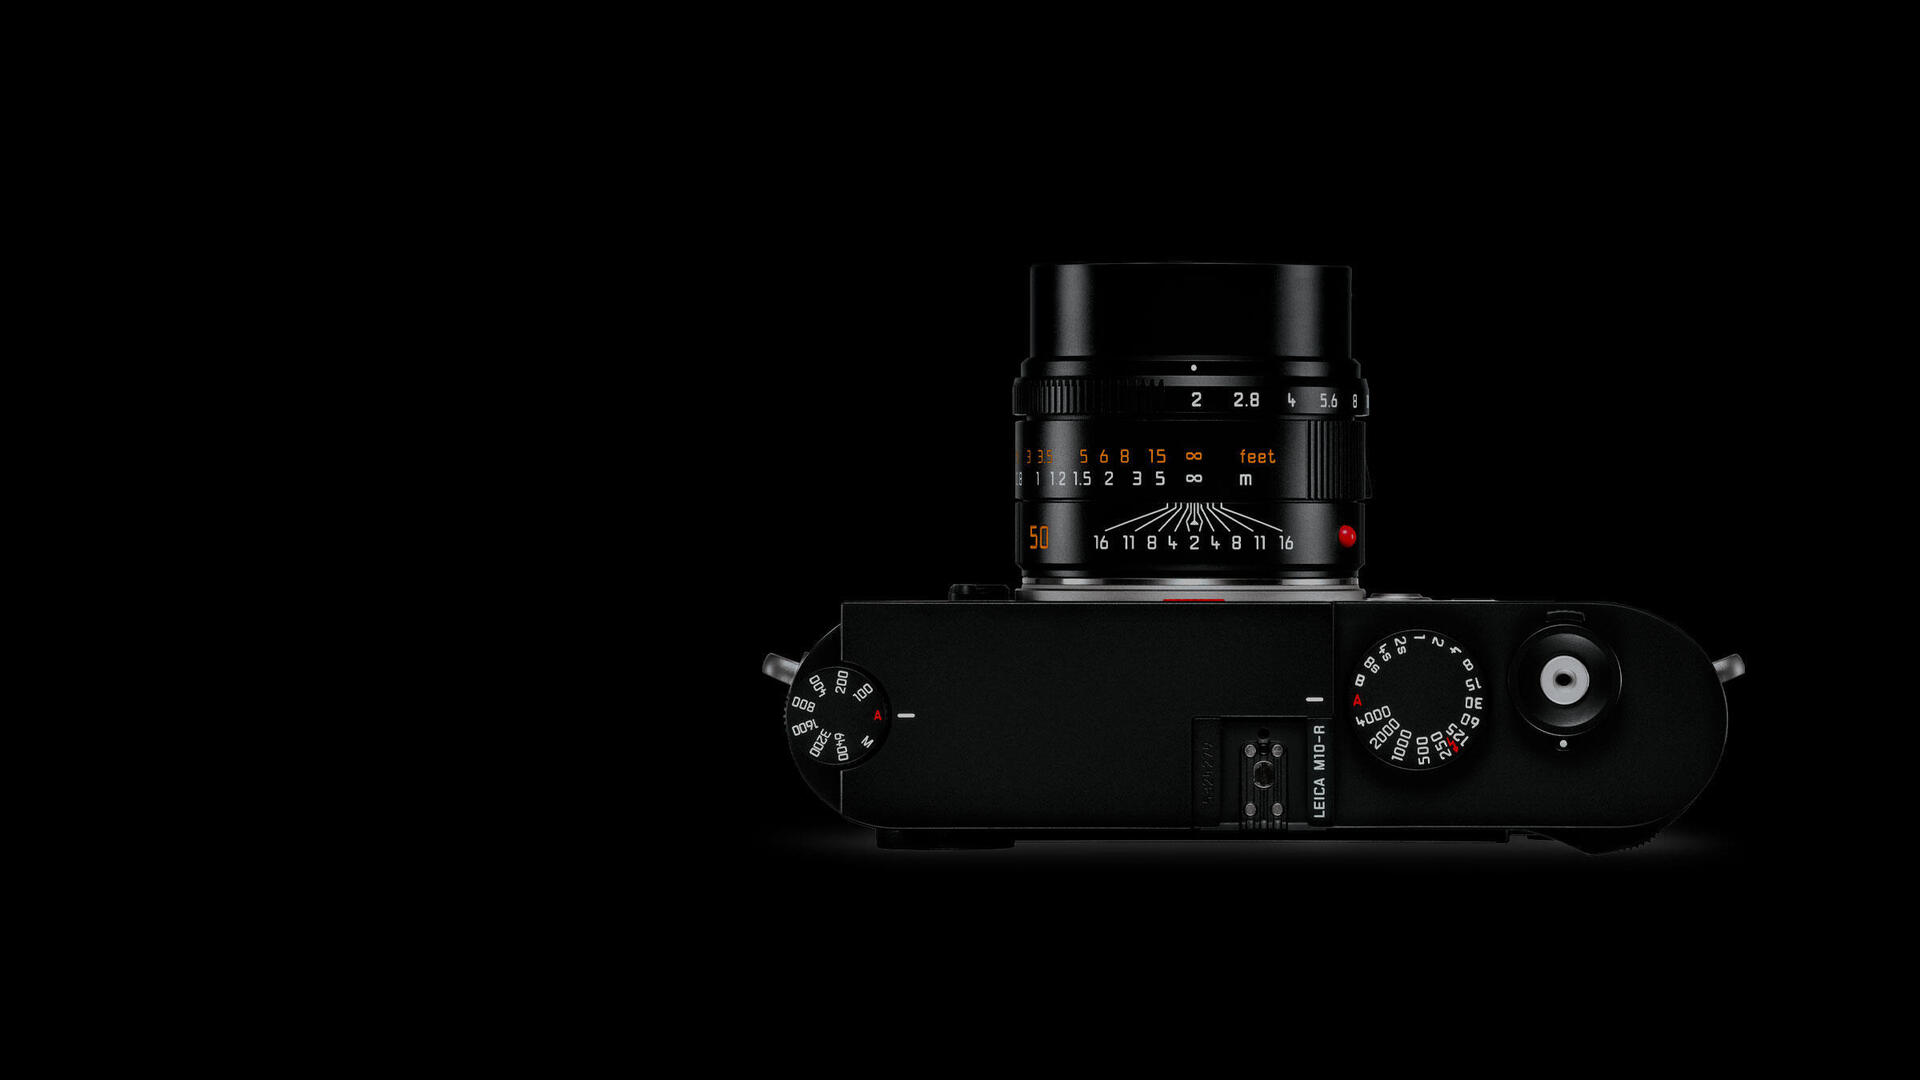 Leica M10-R 